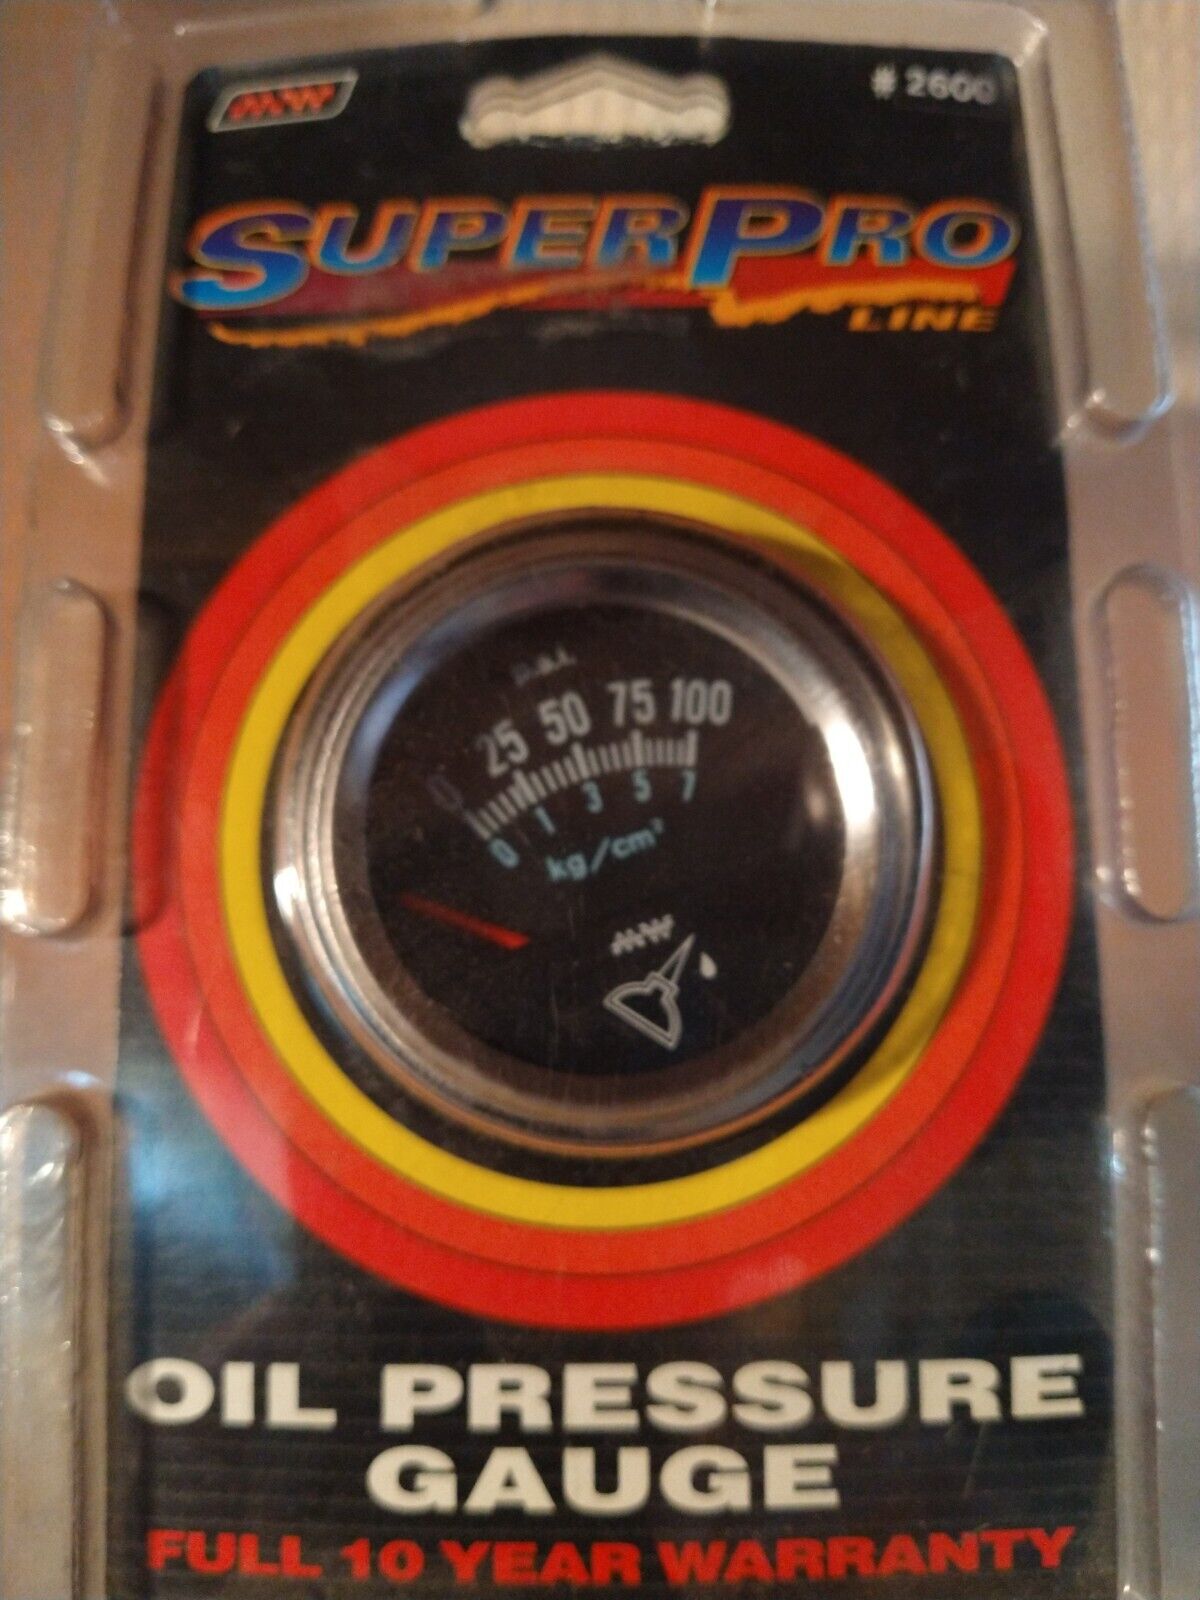 Oil pressure gauge #2600 Super Pro/Make Waves